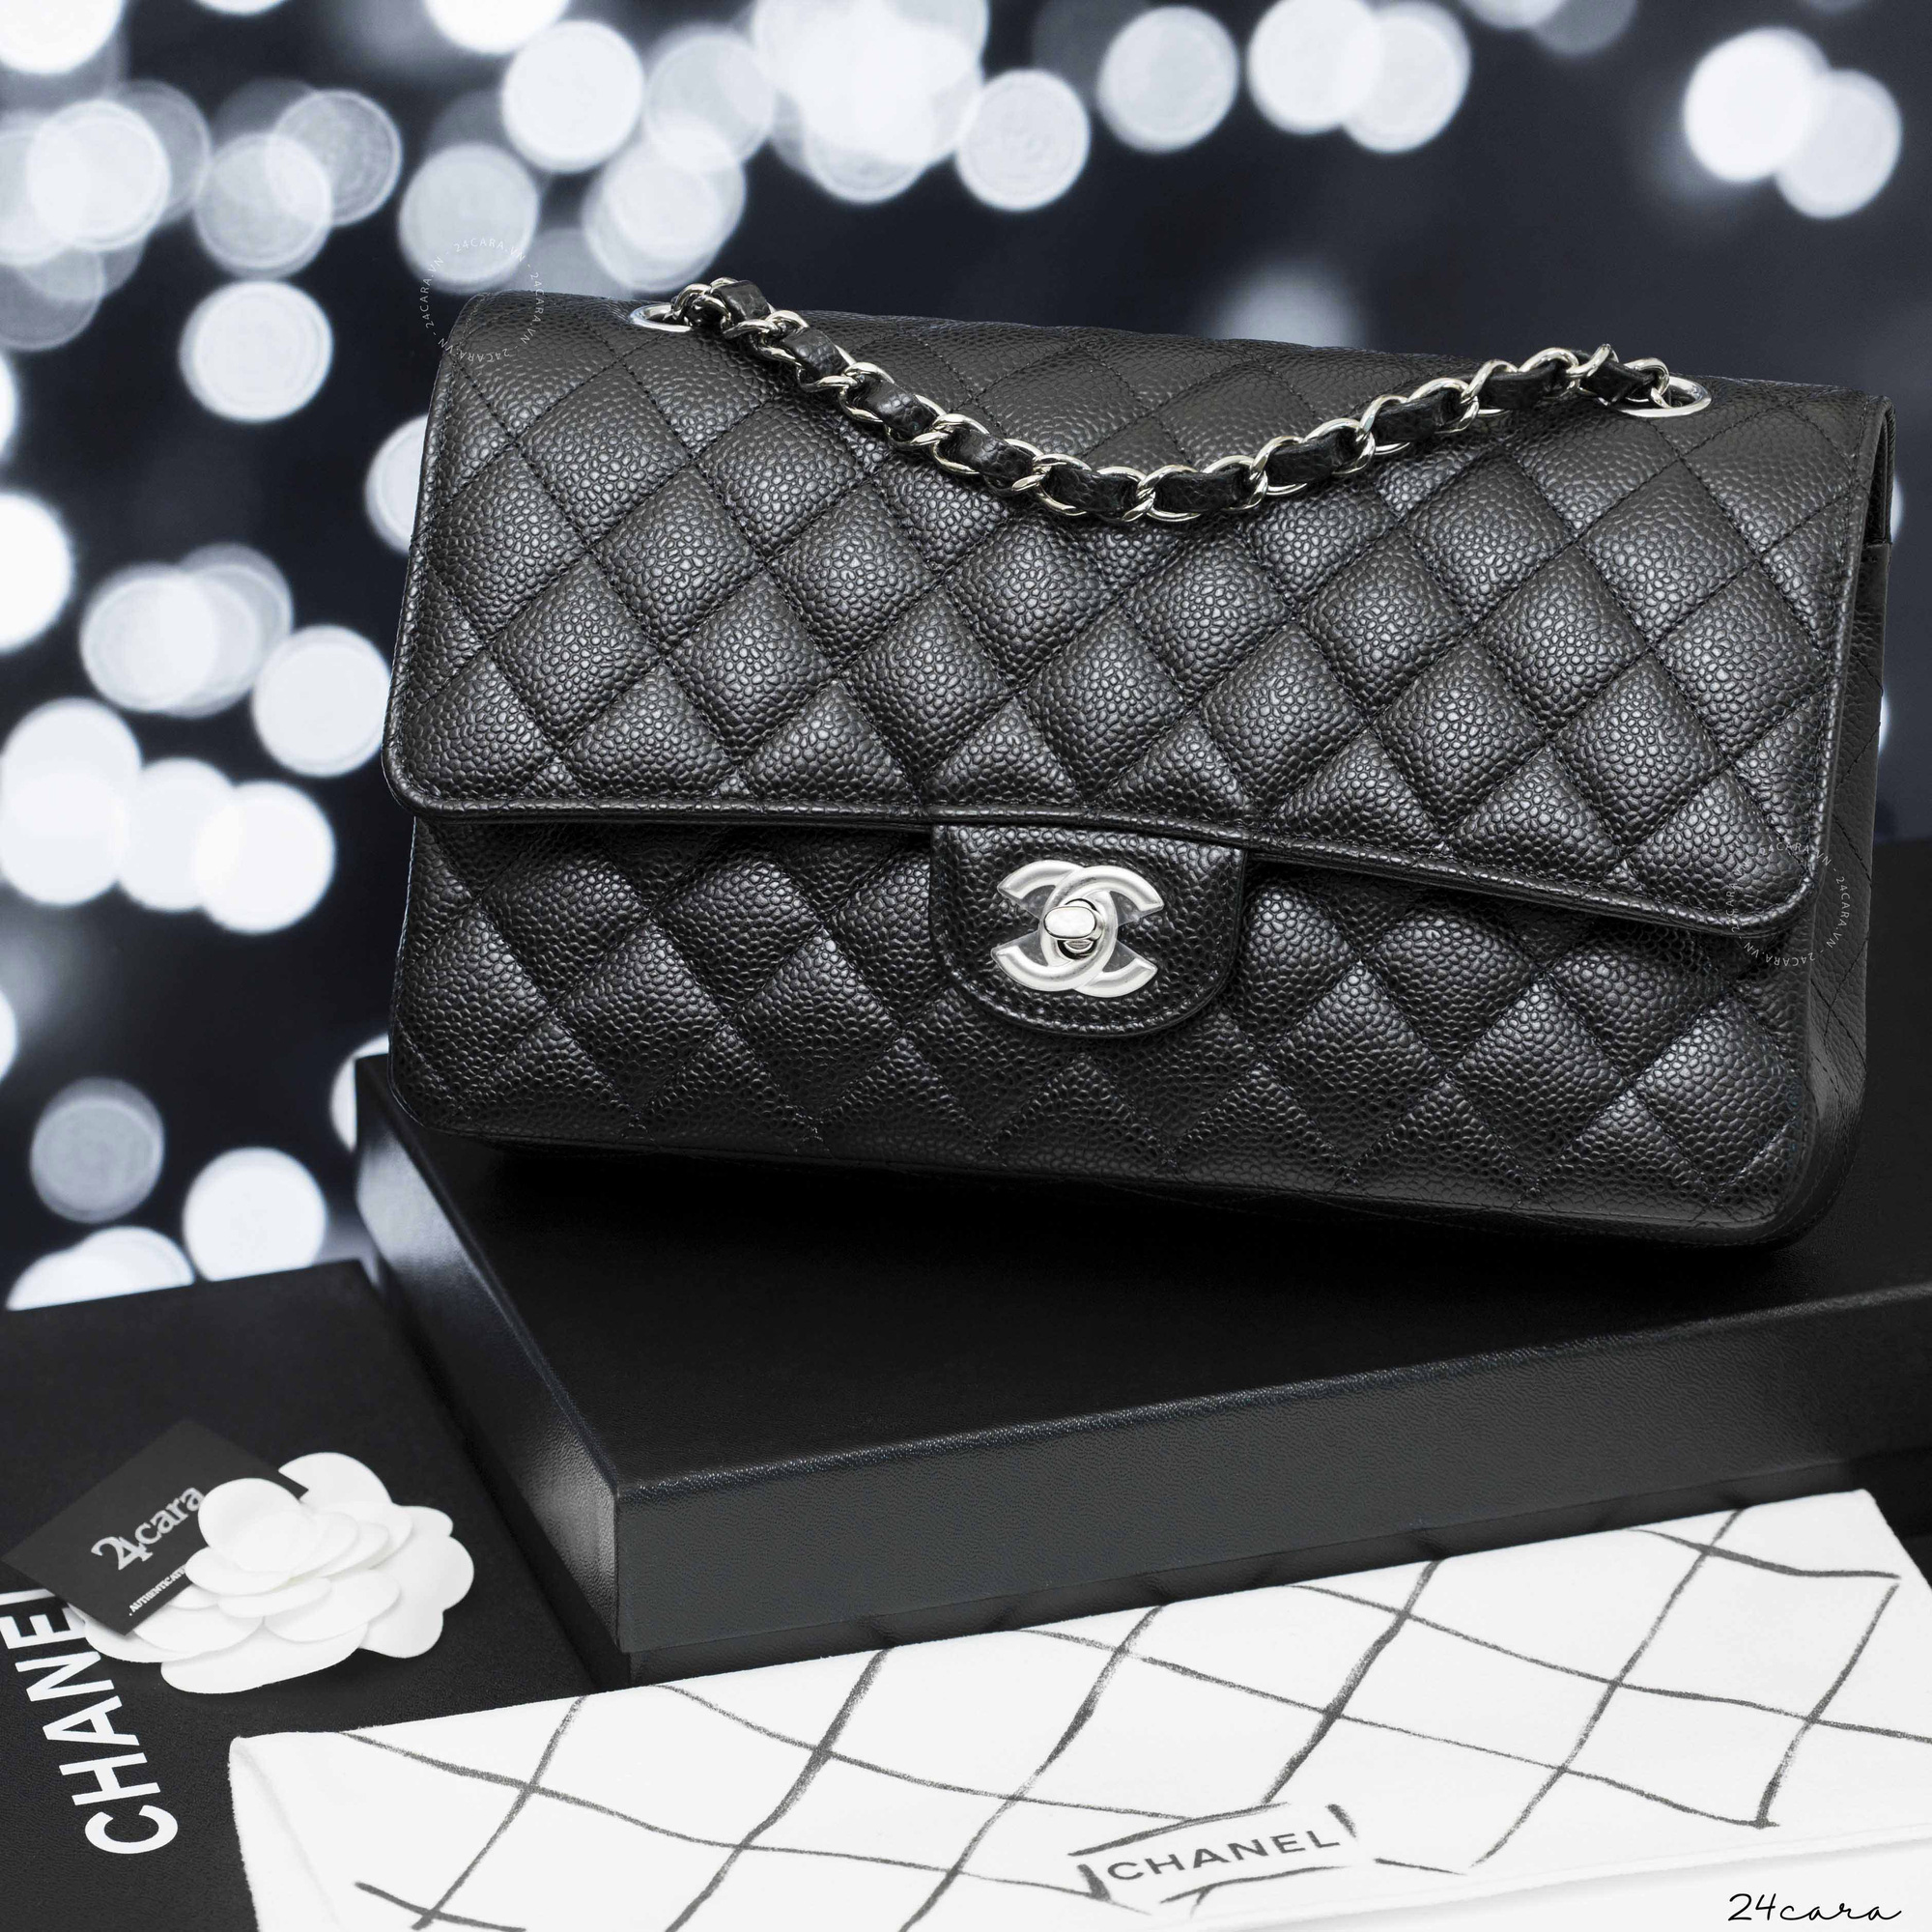 Chanel tiếp tục tăng giá lần 2 trong năm lên mức 12-15%, có mẫu giá đã gần ngang một chiếc Kelly của Hermès - Ảnh 4.